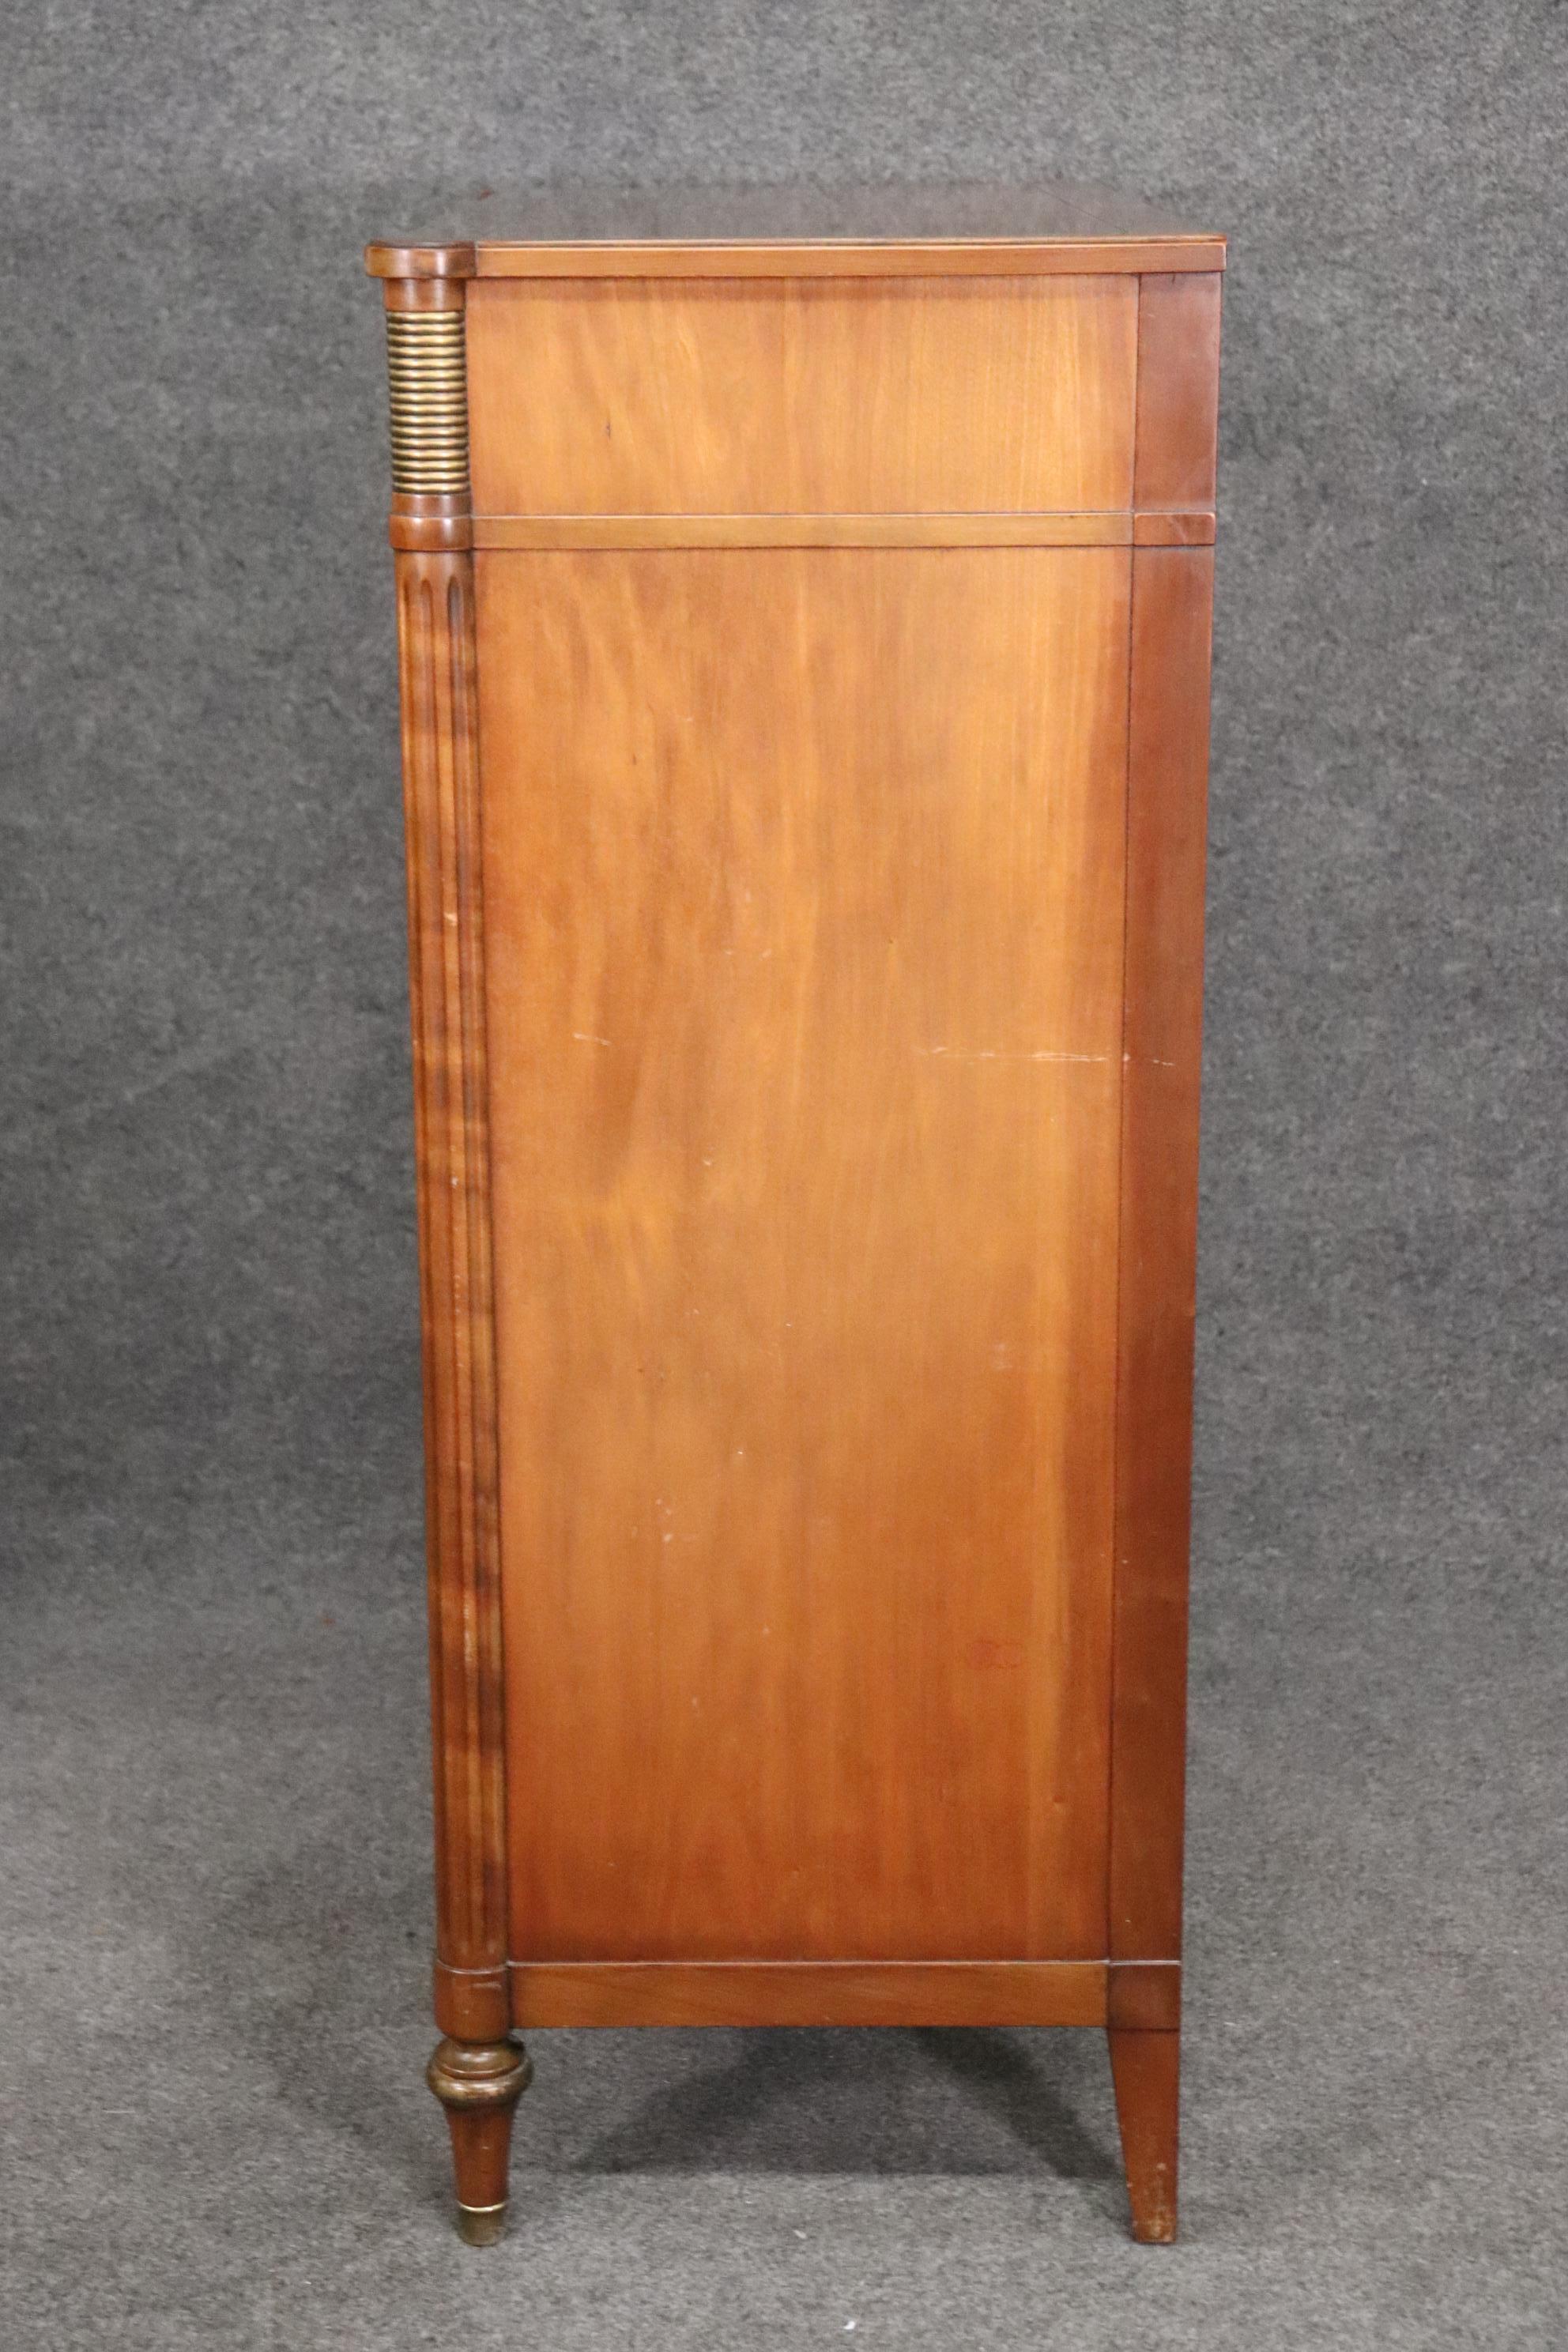 American Solid Cherry Kindel Belvedere Dresser Tall Chest with Tambor Doors